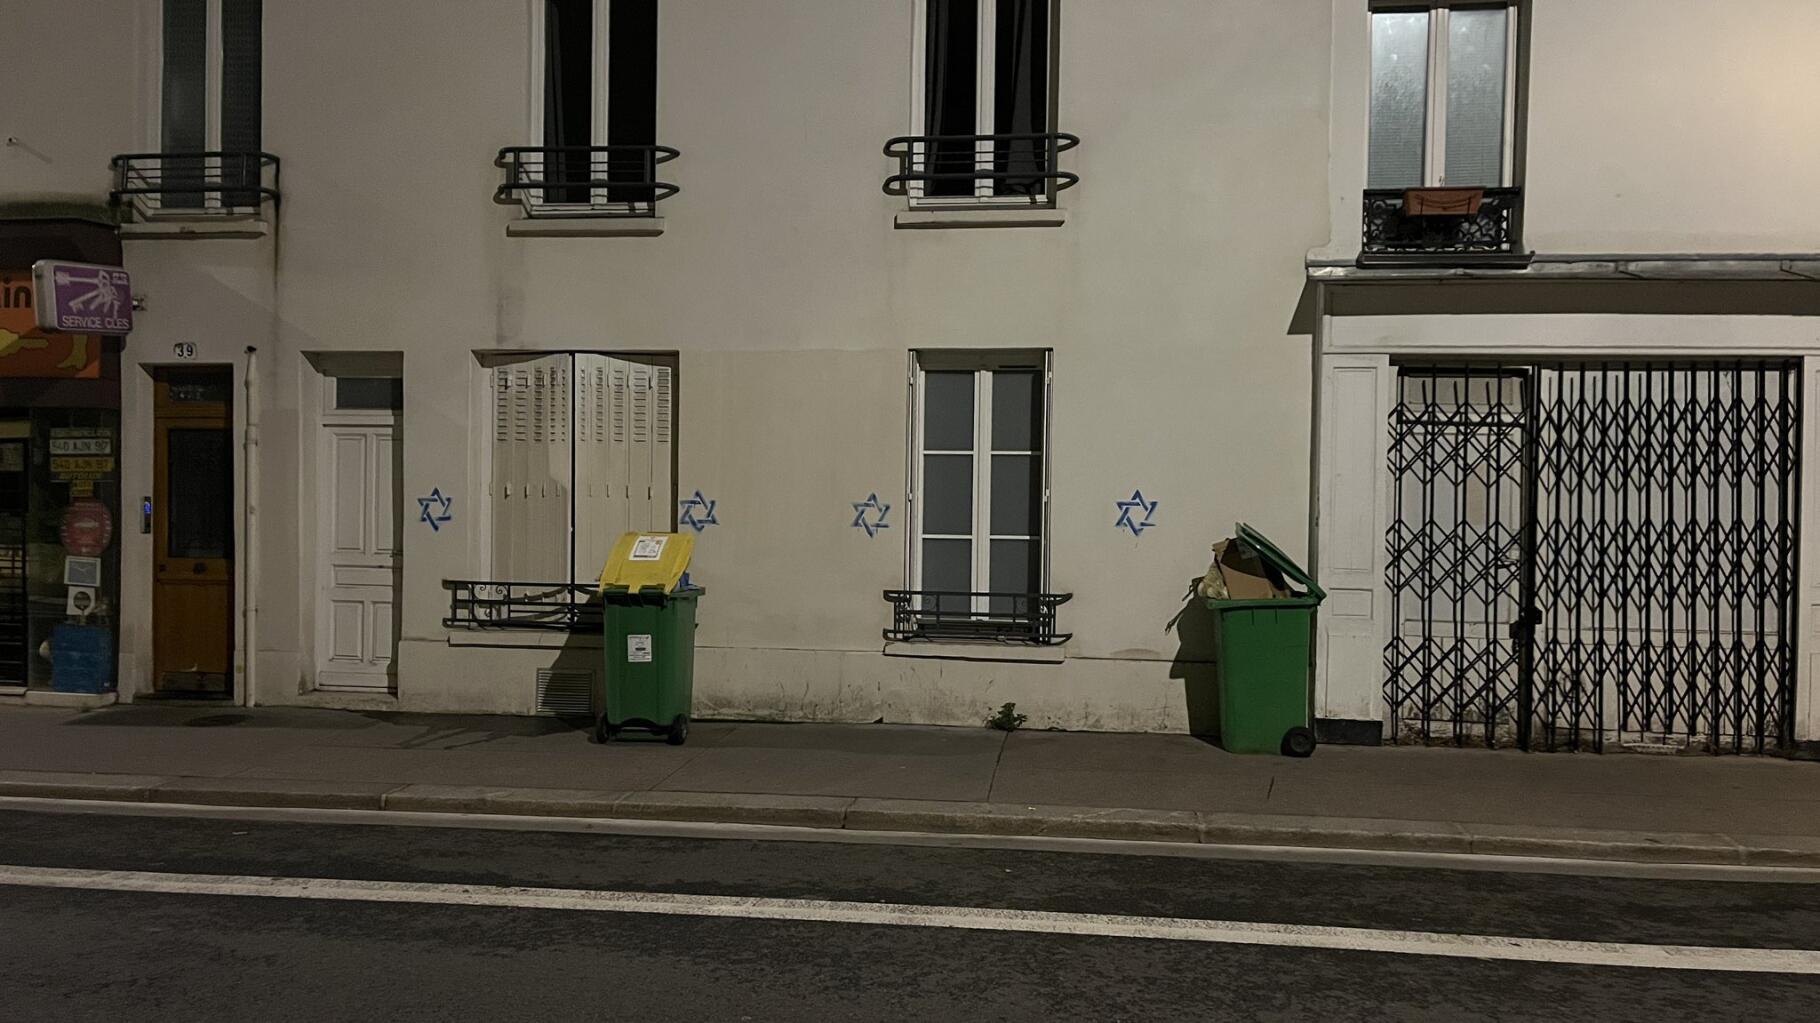   Tags antisémites : des étoiles de David inscrites sur des immeubles à Paris et en banlieue parisienne  